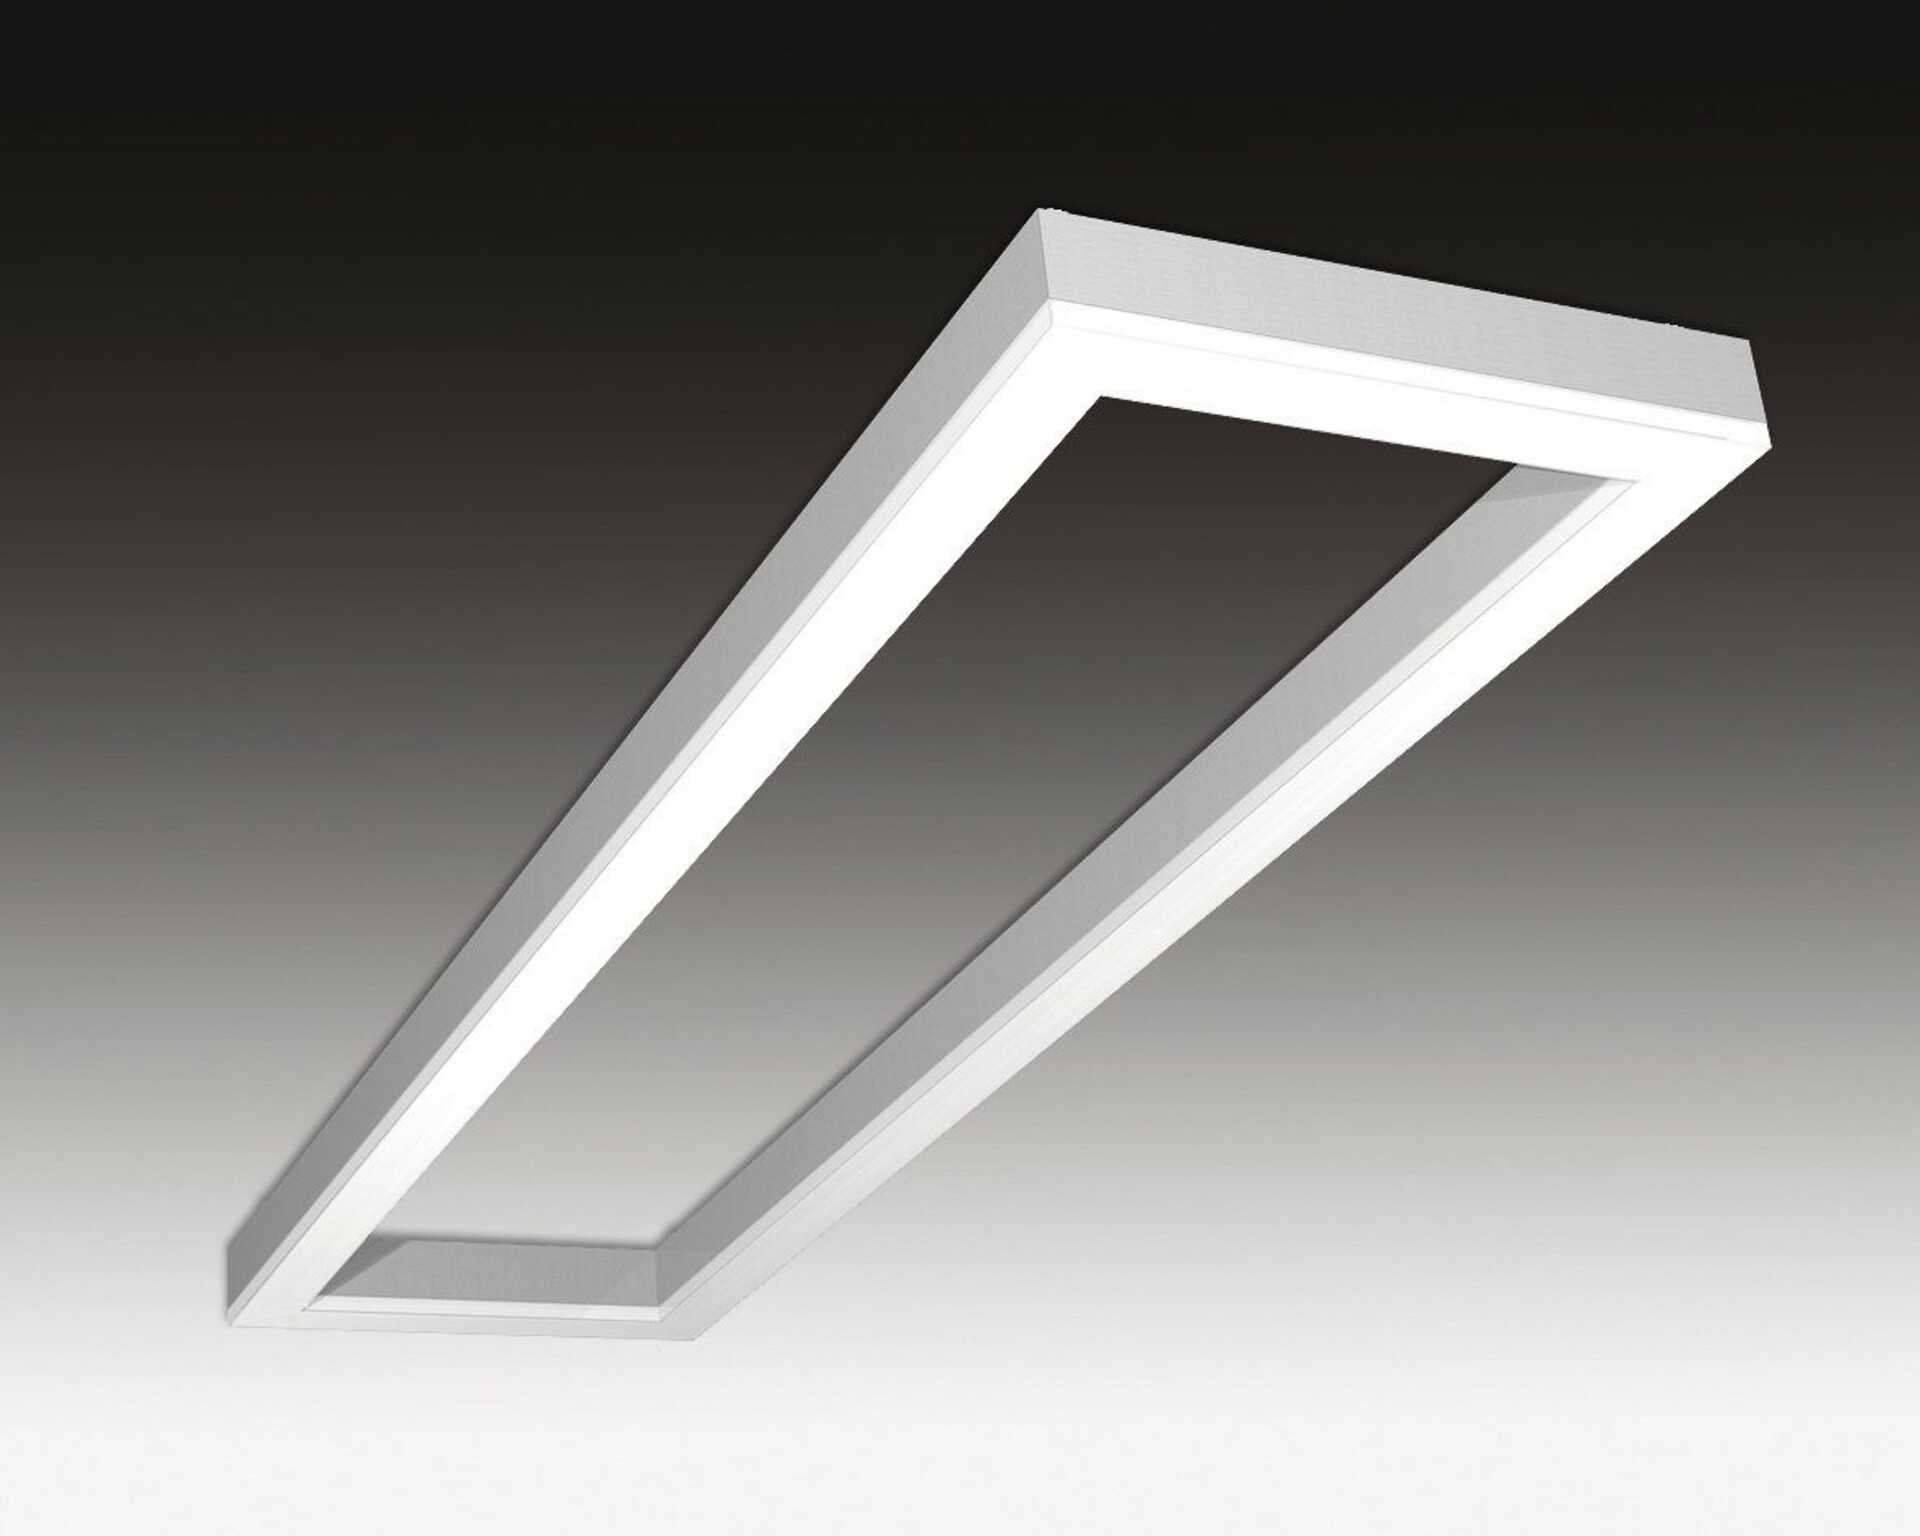 SEC Stropní nebo závěsné LED svítidlo s přímým osvětlením WEGA-FRAME2-DB-DIM-DALI, 72 W, eloxovaný AL, 1165 x 330 x 50 mm, 72 W, 3000 K, 9500 lm 322-B-111-01-00-SP